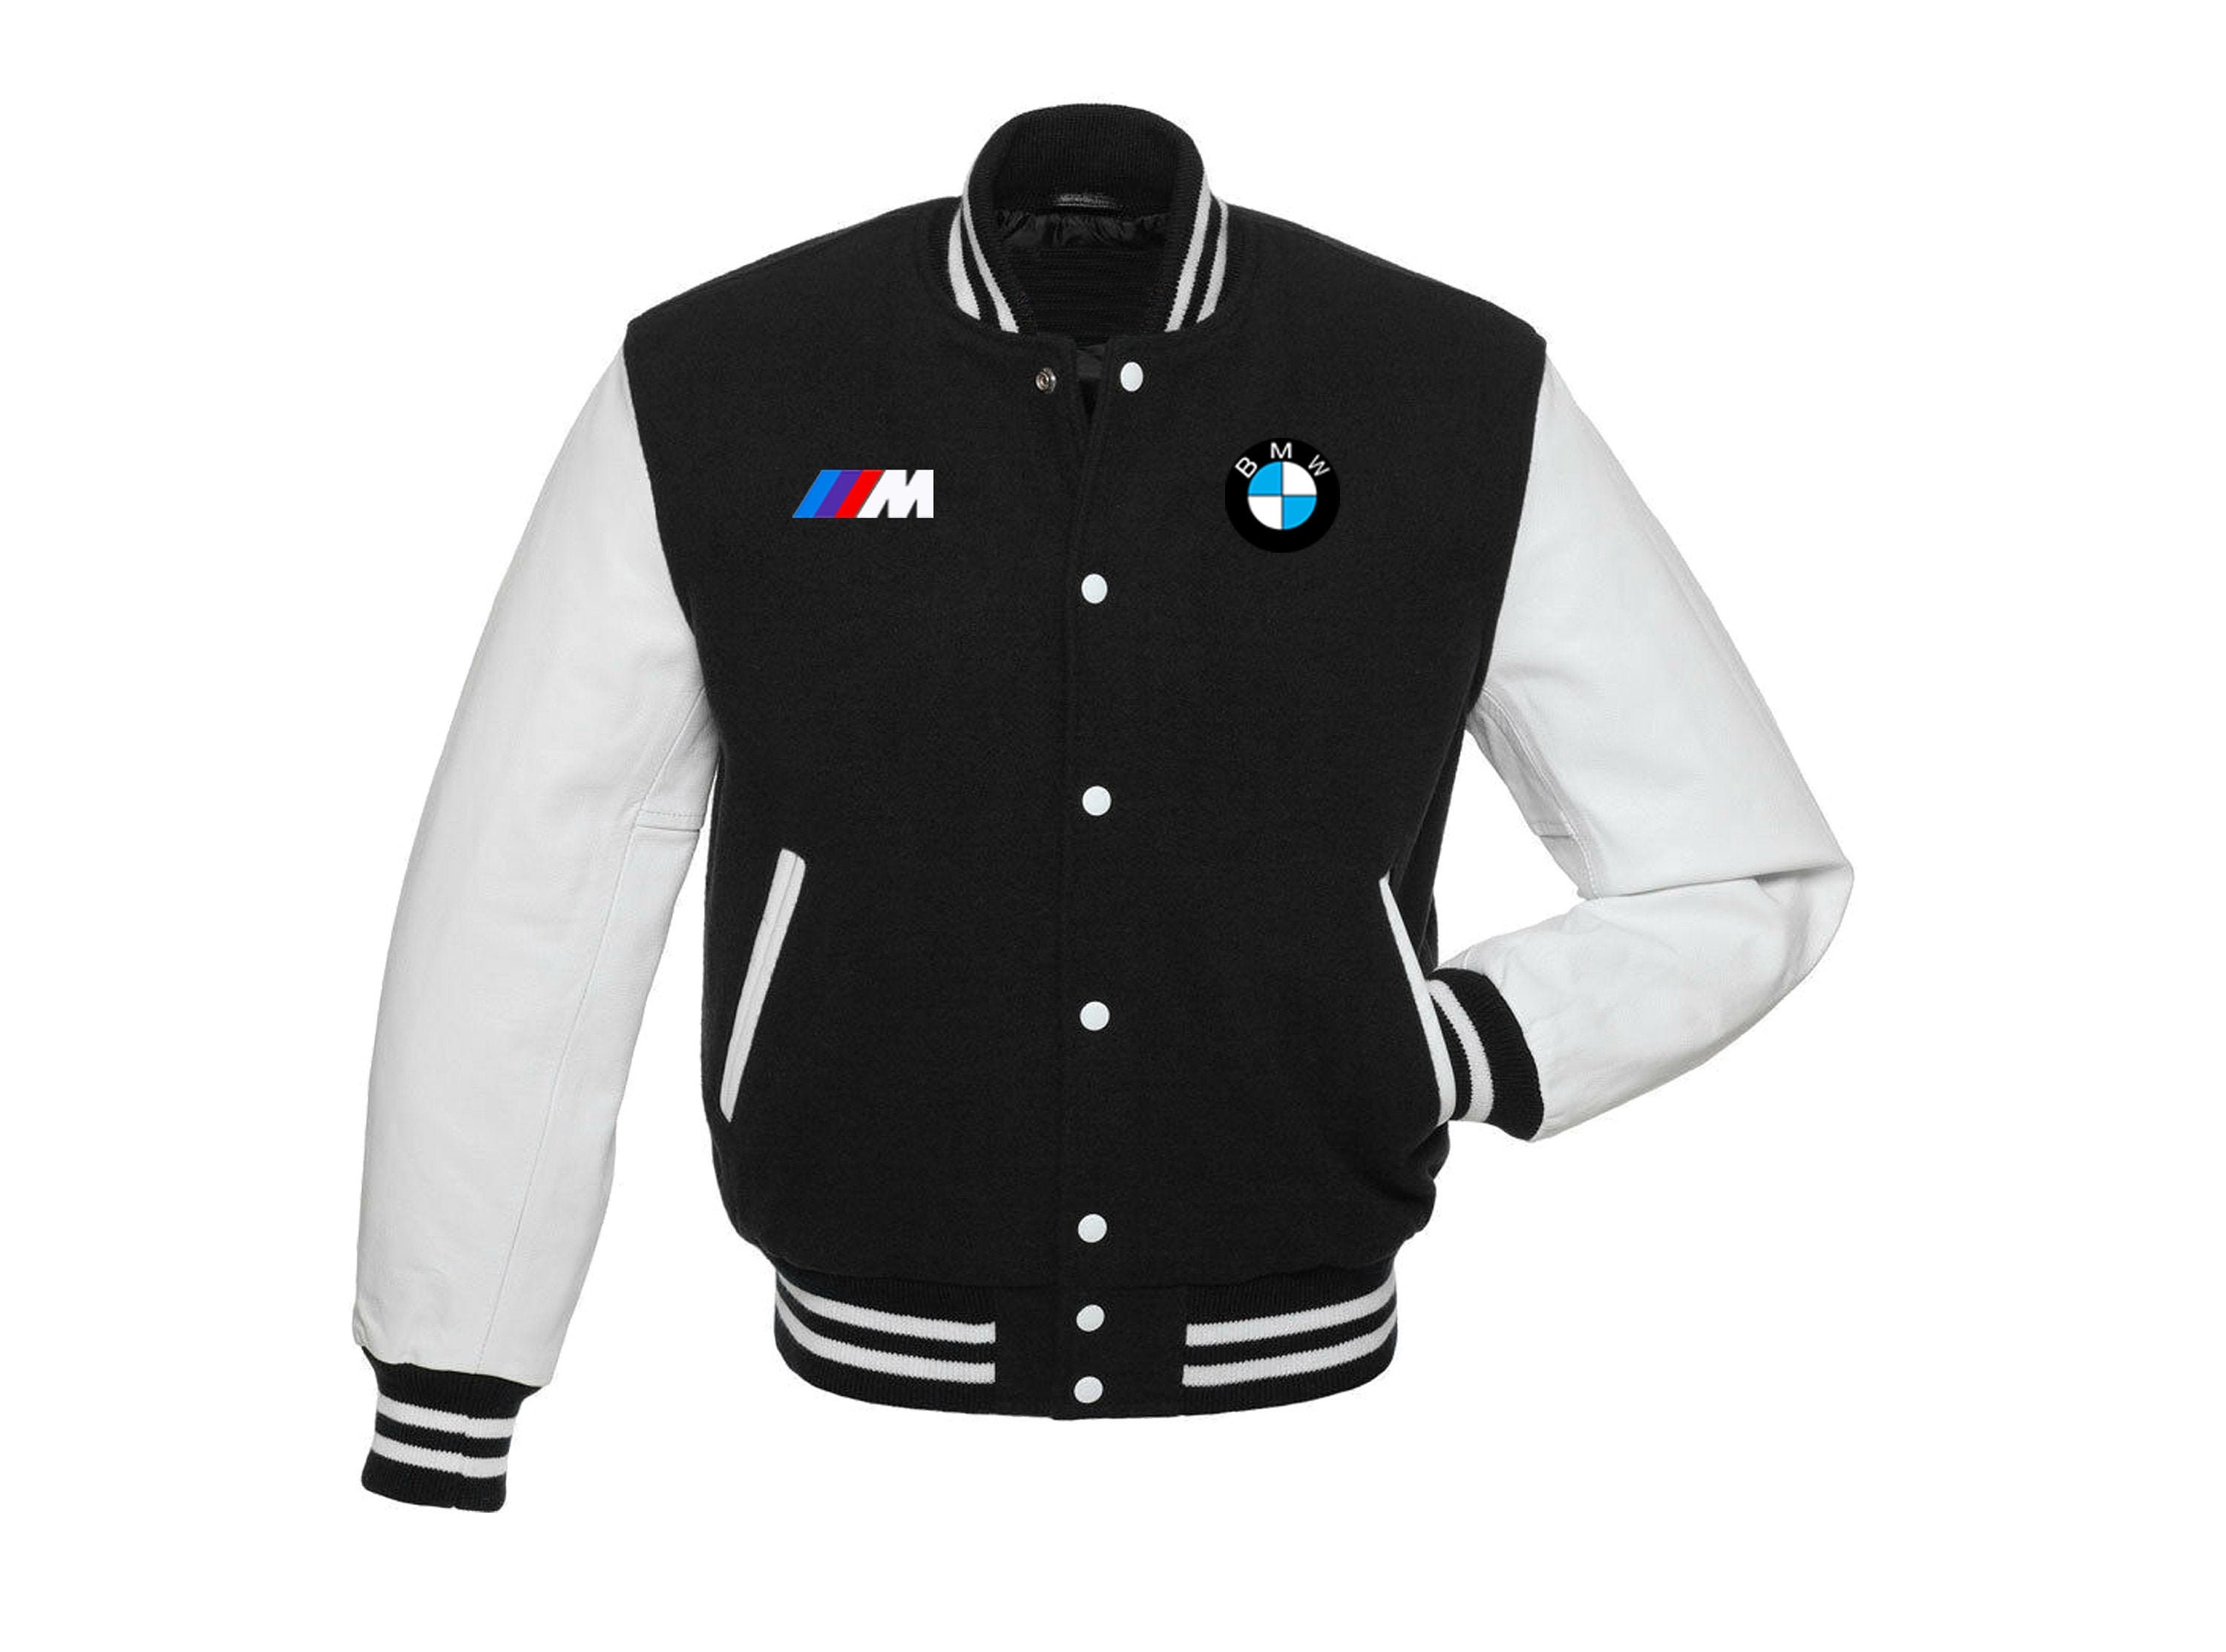 Varsity Jacket BMW Letterman Jacket White and Black With | Etsy